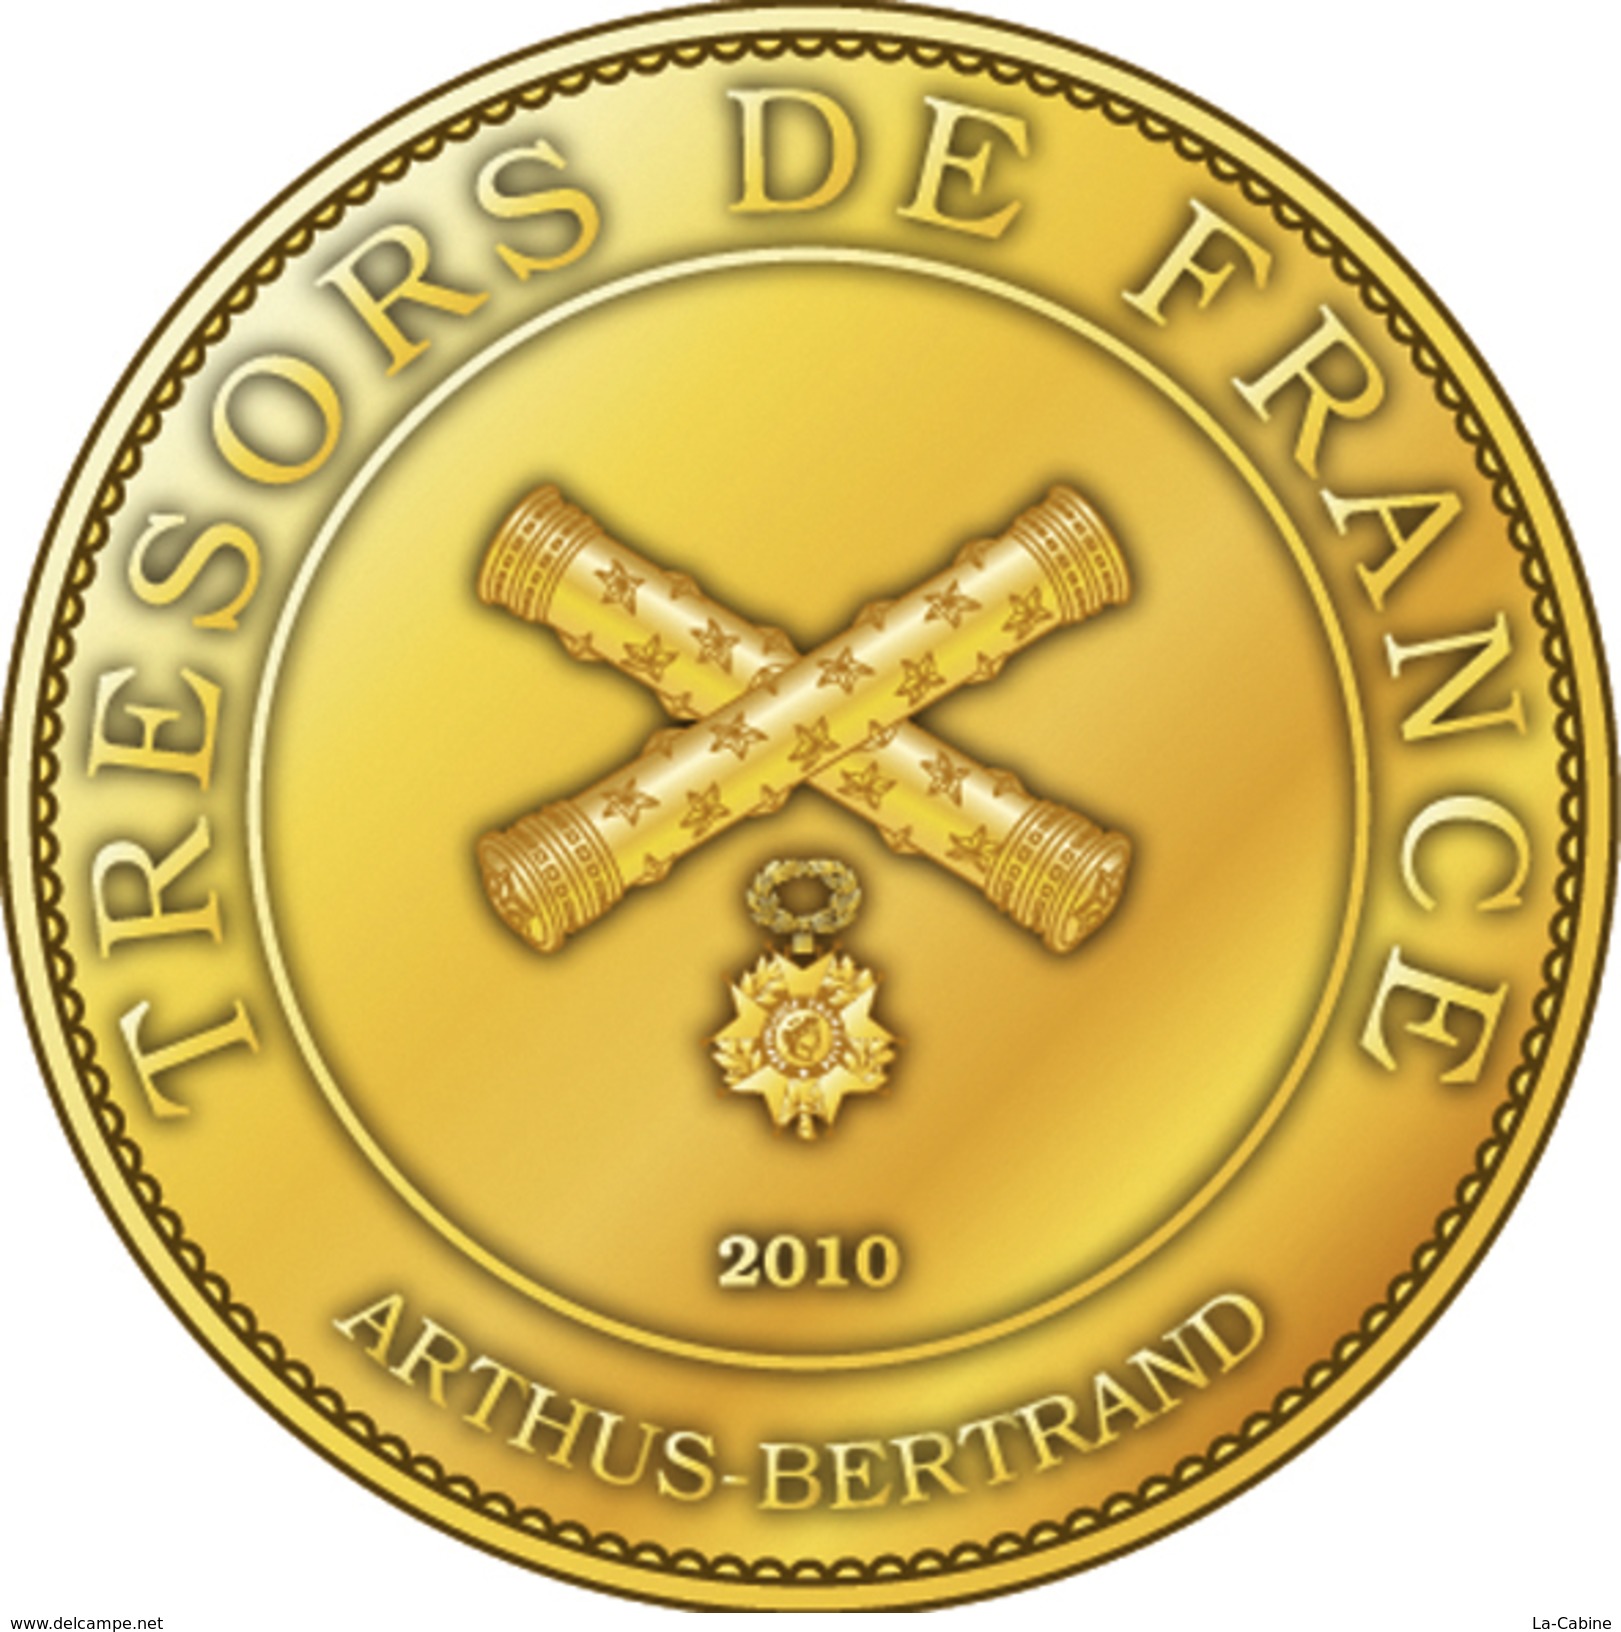 60 OISE PLAILLY PARC ASTERIX MÉDAILLE TOURISTIQUE ARTHUS BERTRAND 2010 JETON TOURISTIQUE TOKENS MEDALS COINS - 2010